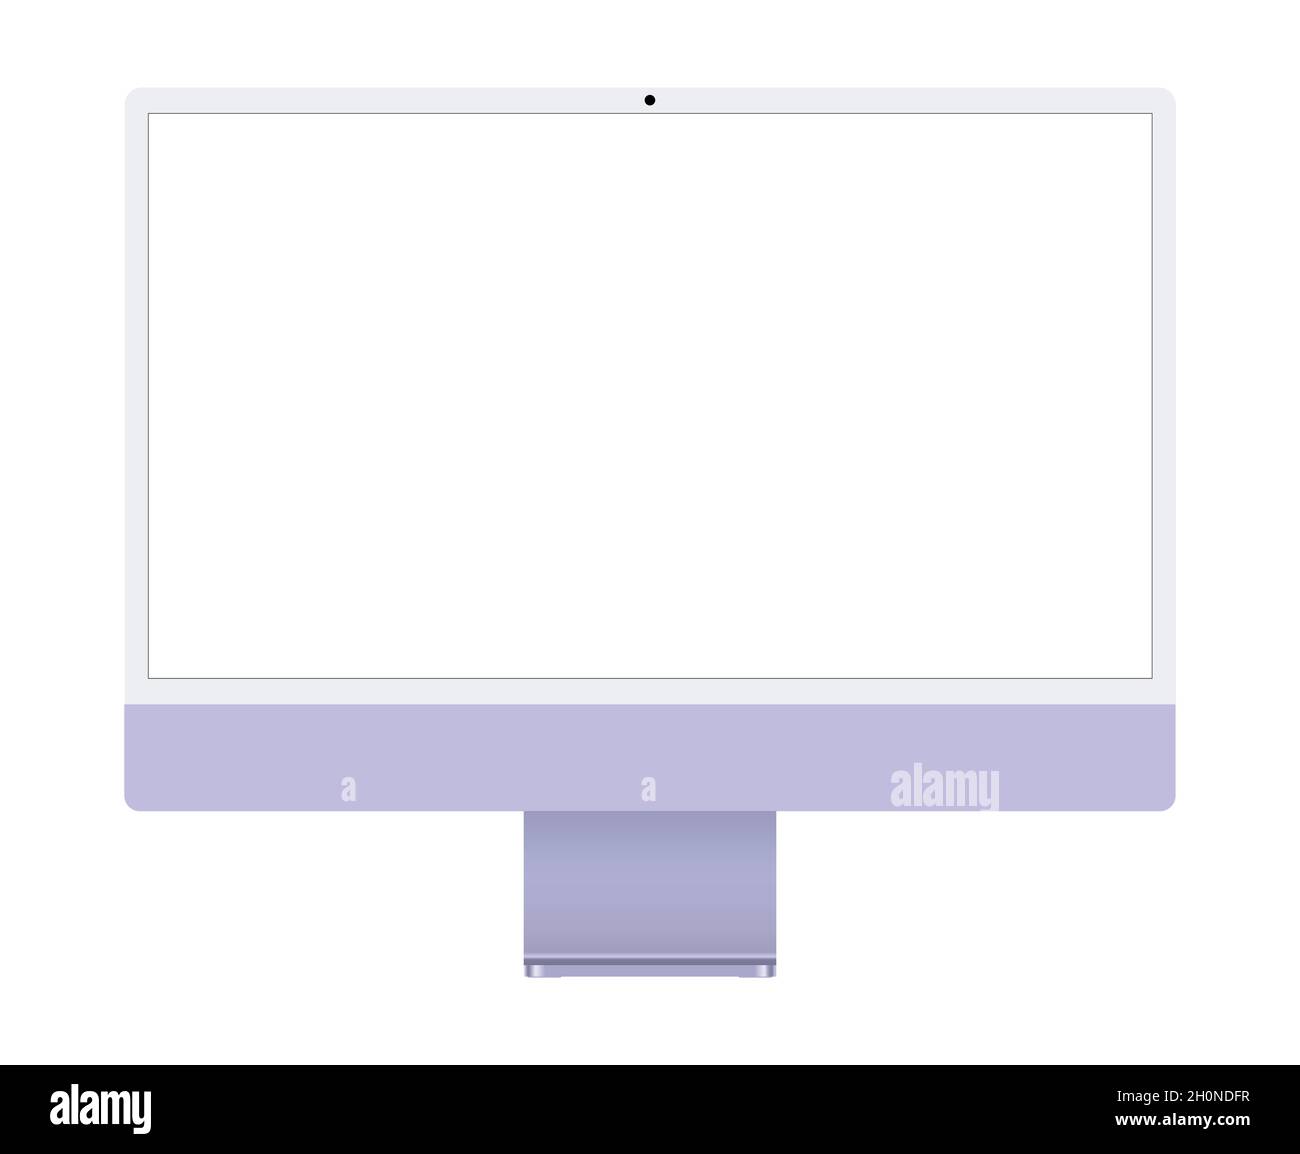 Nouveau modèle d'écran d'ordinateur imac moderne, illustration de stock vectorielle au design plat Illustration de Vecteur